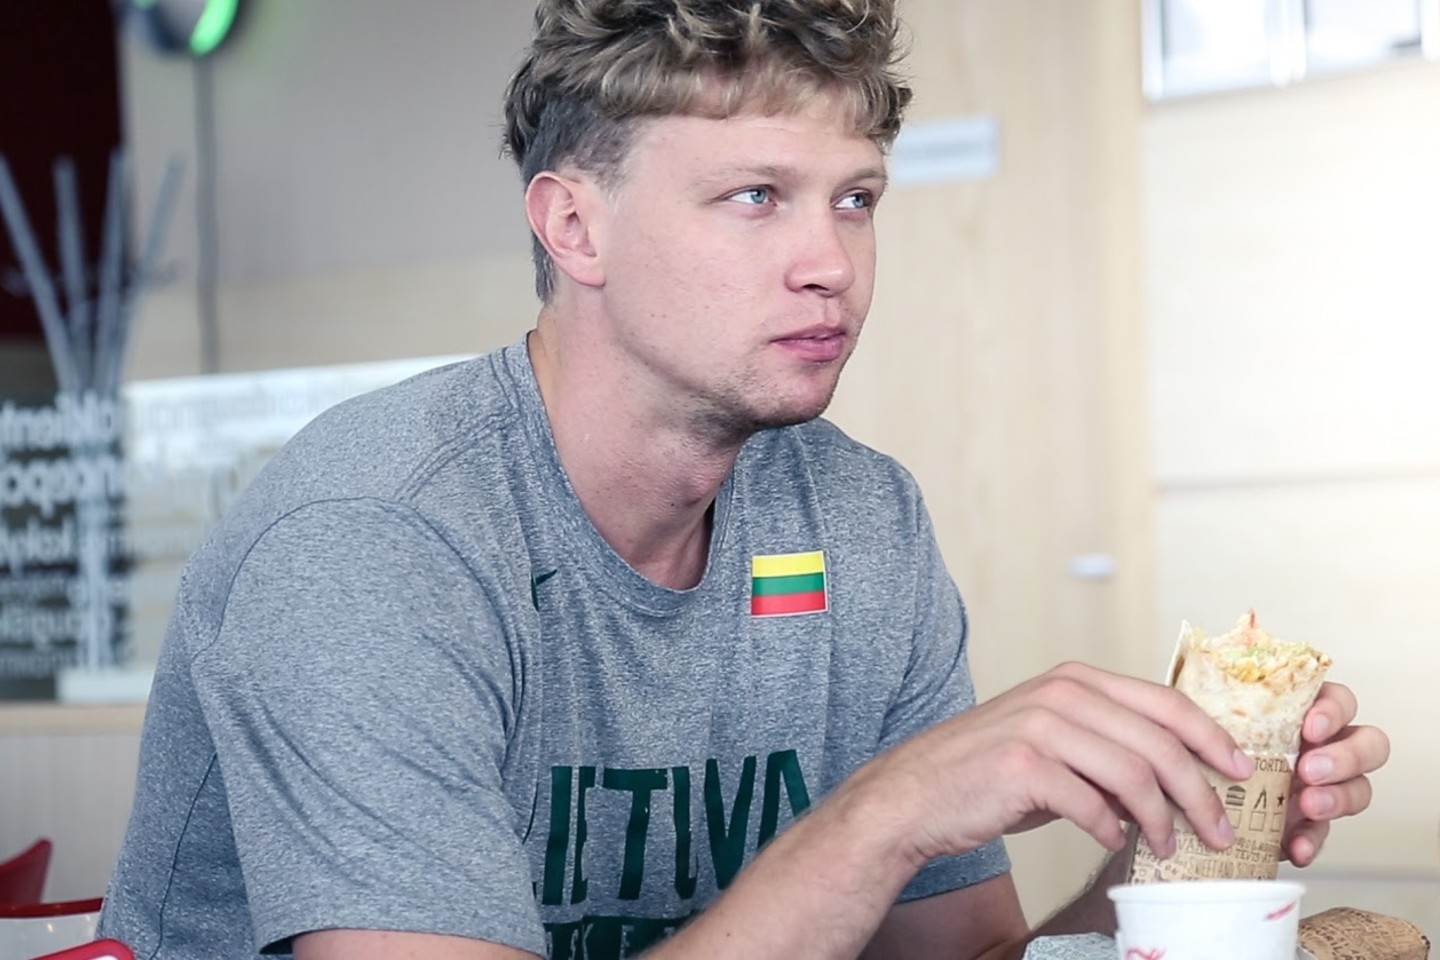  Lietuvos krepšininkai papasakojo apie savo pusryčius.